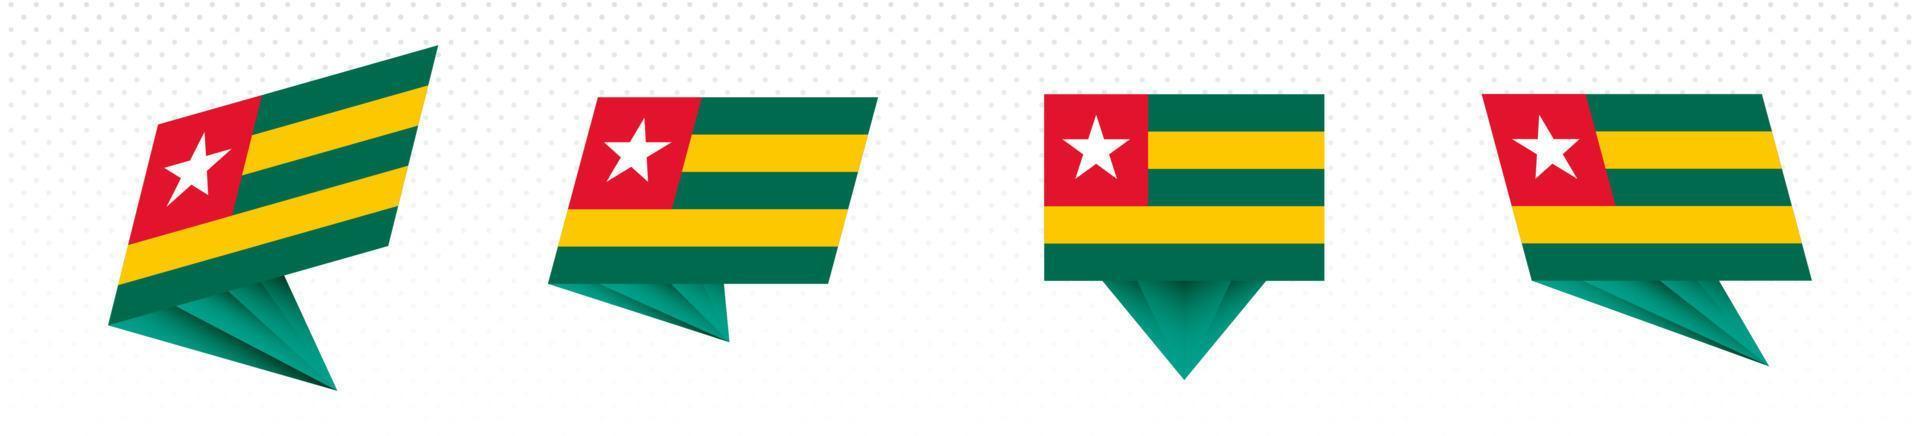 Flagge von Togo im modernen abstrakten Design, Flaggensatz. vektor